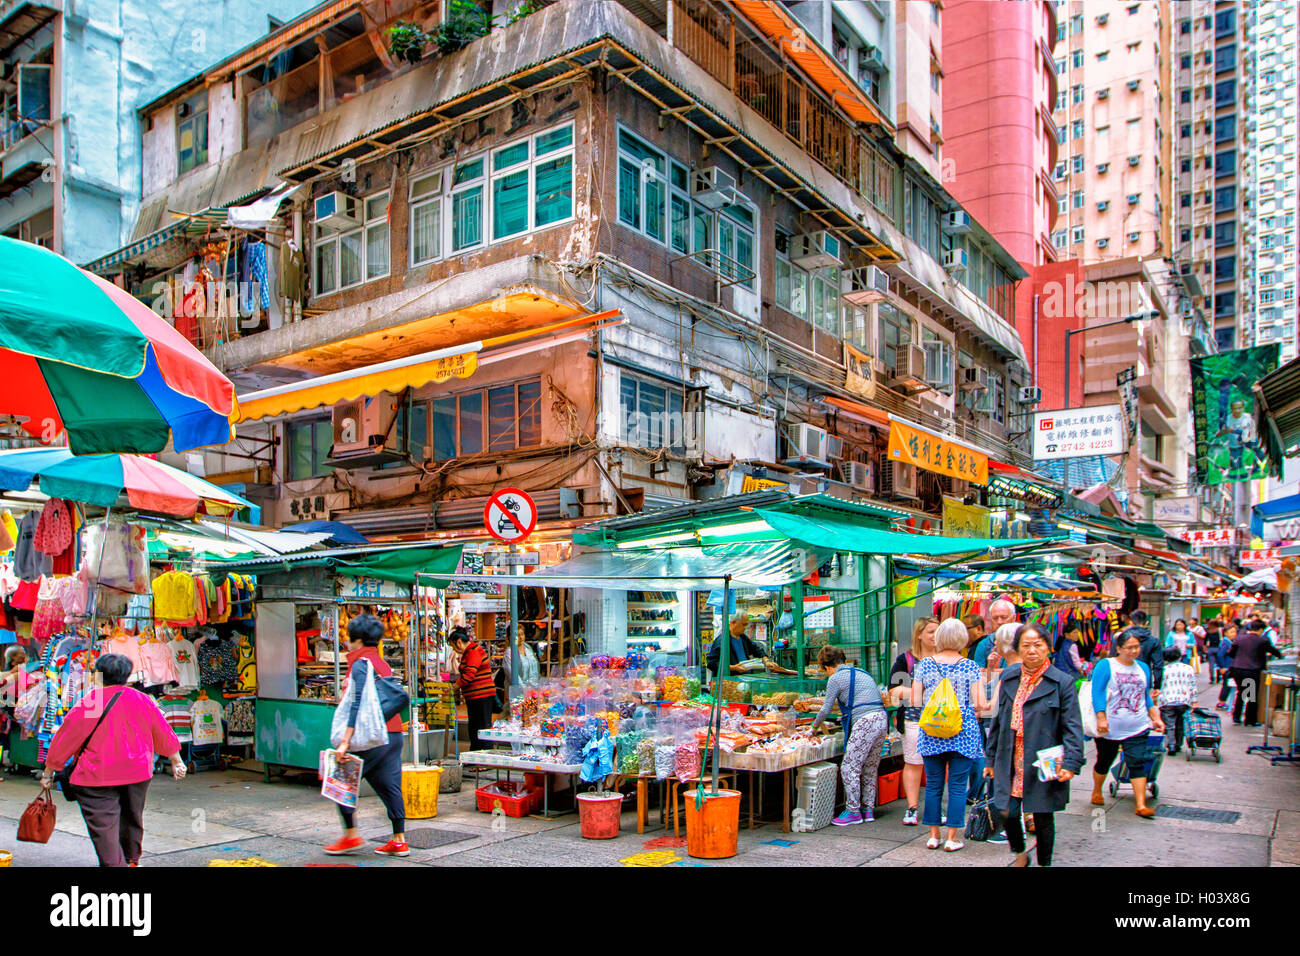 Wan chai market in Hong Kong Stock Photo